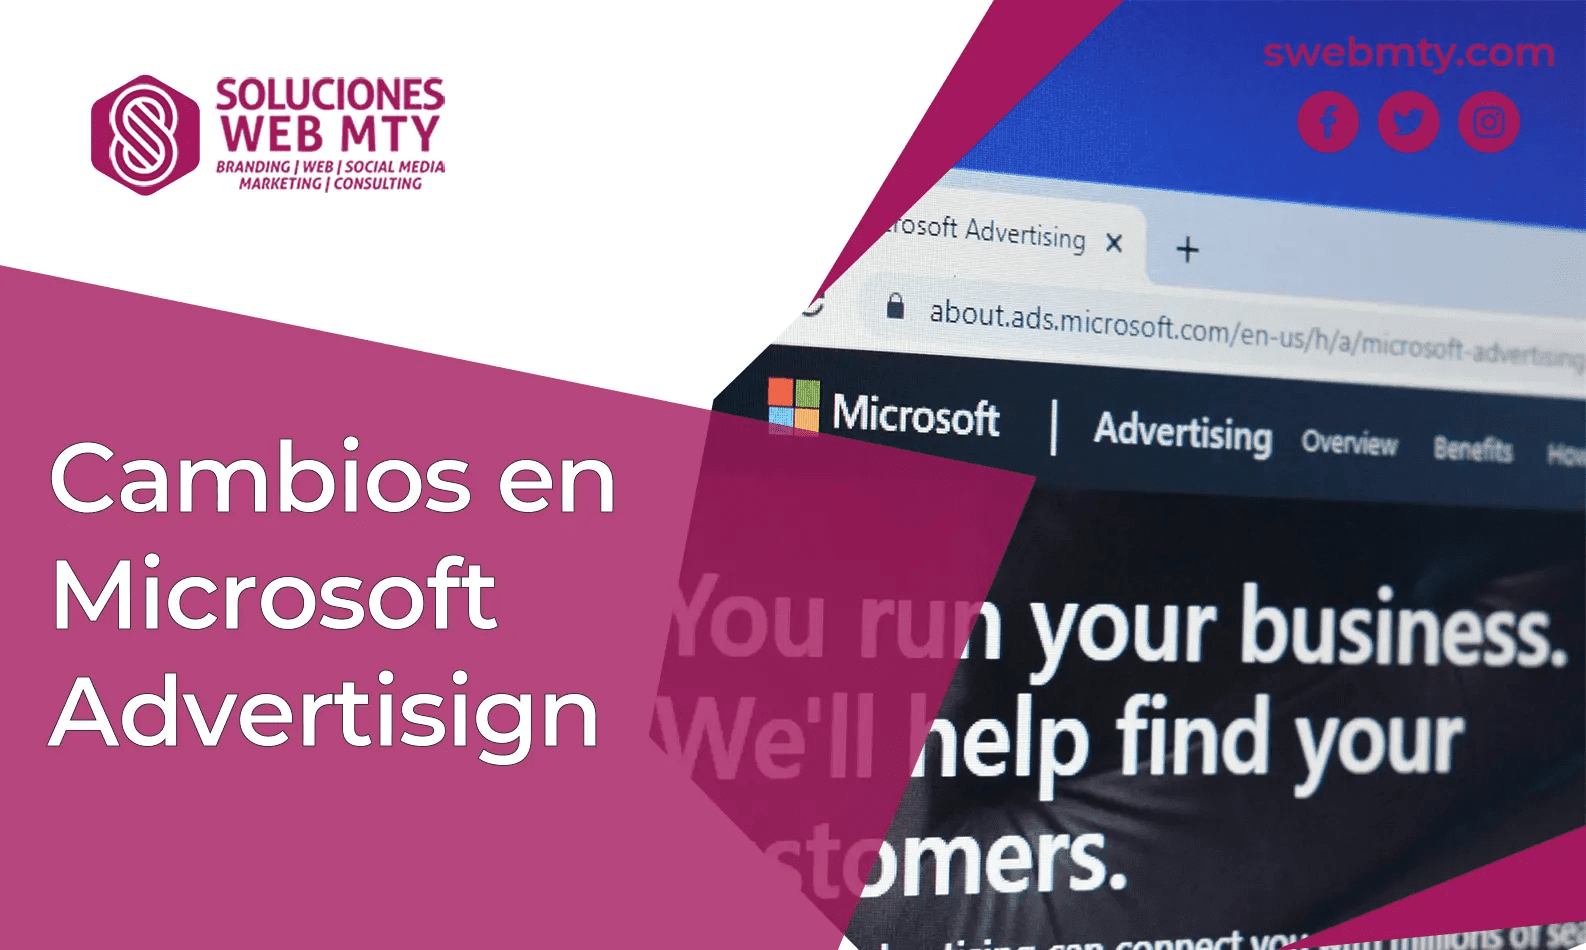 Cambios en Microsoft Advertisign